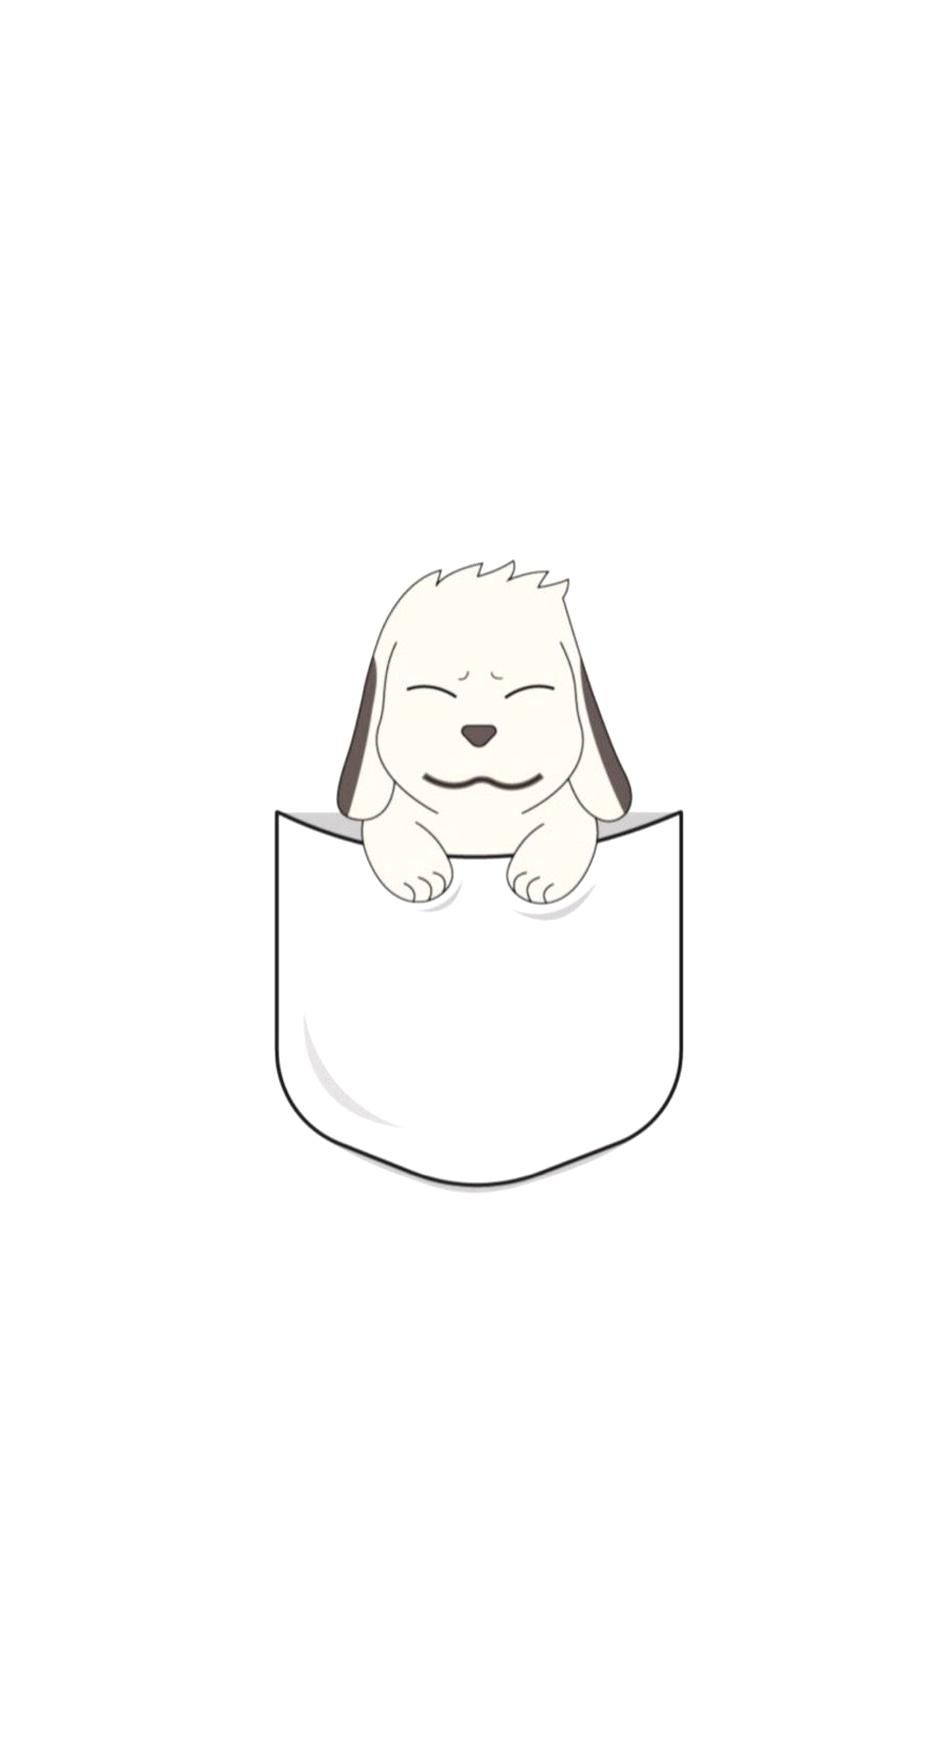 Free download naruto babyakamaru akamaru dog anime wallpaper lockscreen [952x1748] for your Desktop, Mobile & Tablet. Explore Akamaru Dog Wallpaper. Dog Wallpaper, Dog Background, Dog Wallpaper